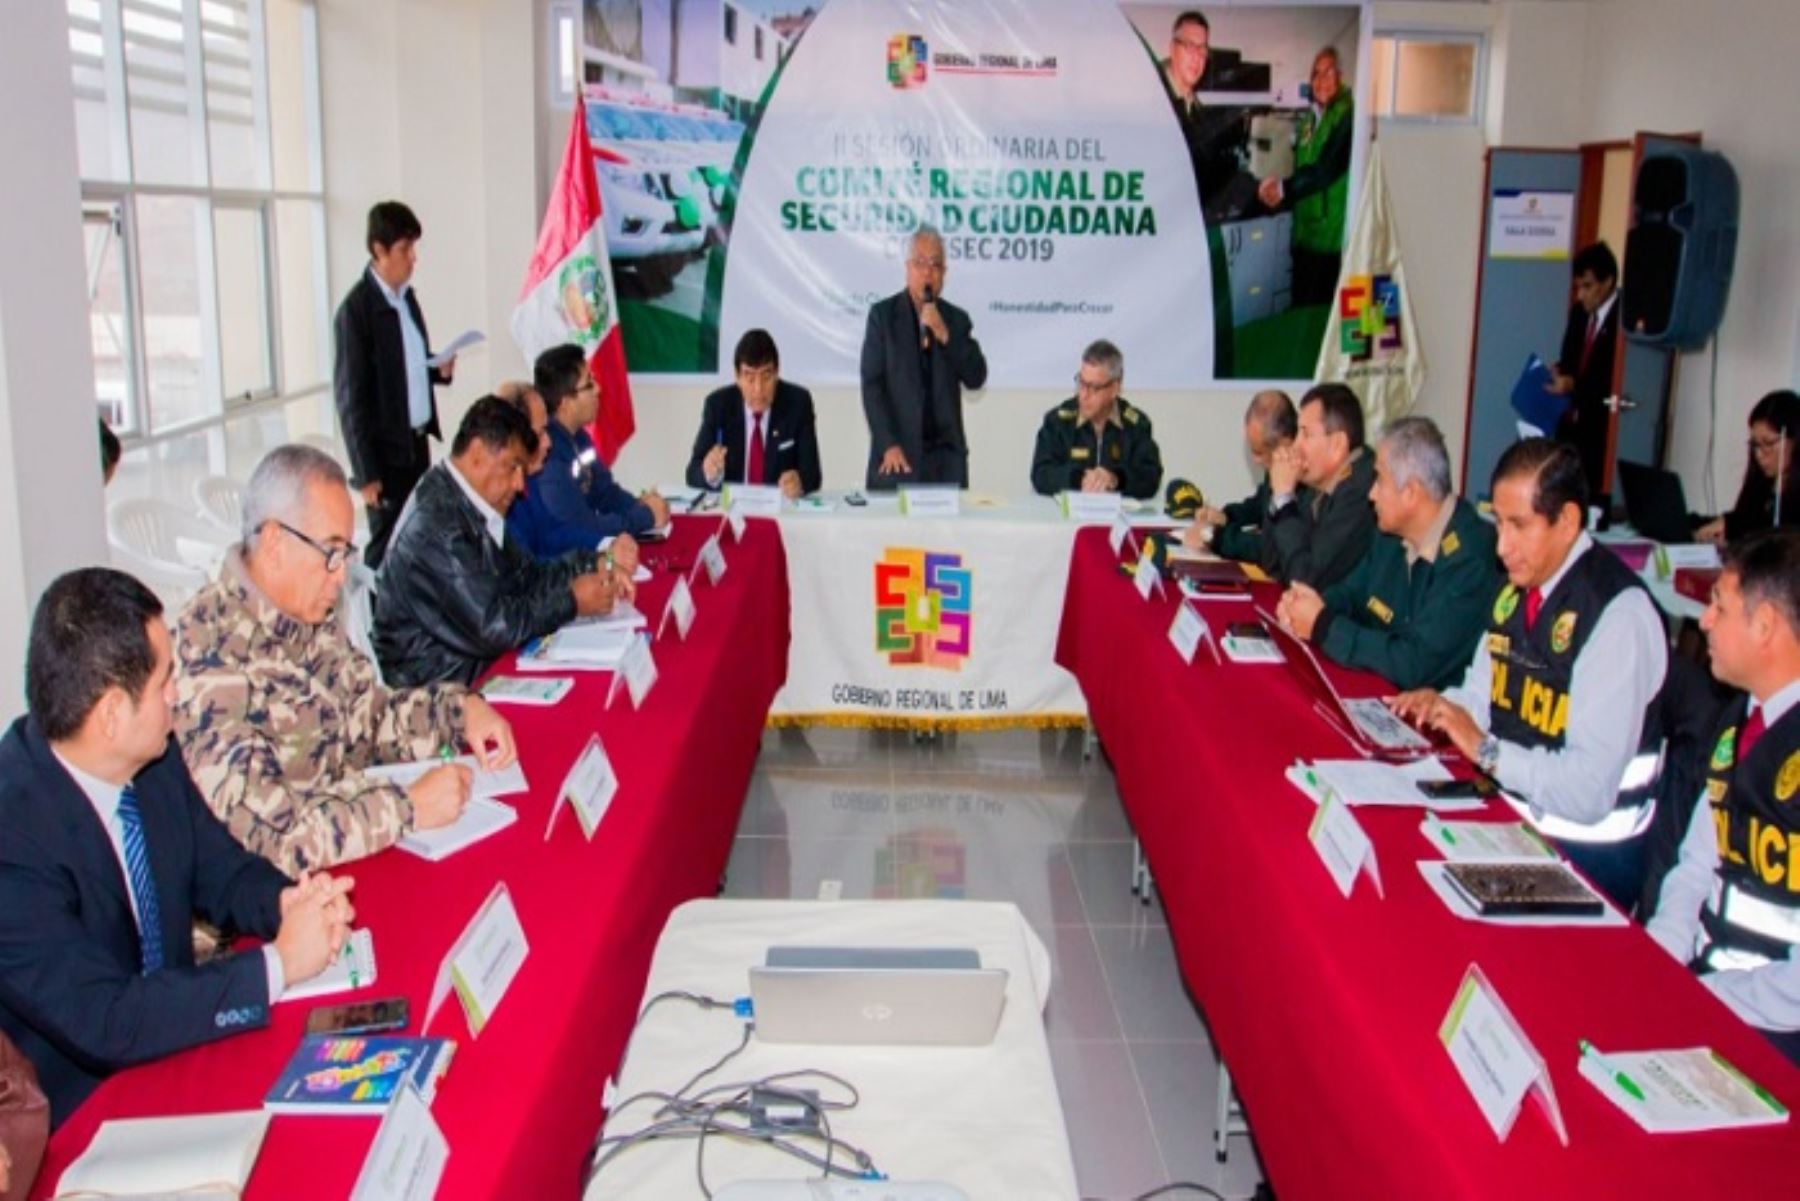 Para el martes 24 de setiembre se tiene programado la realización de la III sesión ordinaria del Comité Regional de Seguridad Ciudadana (Coresec), en Huacho, provincia de Huaura, región Lima.